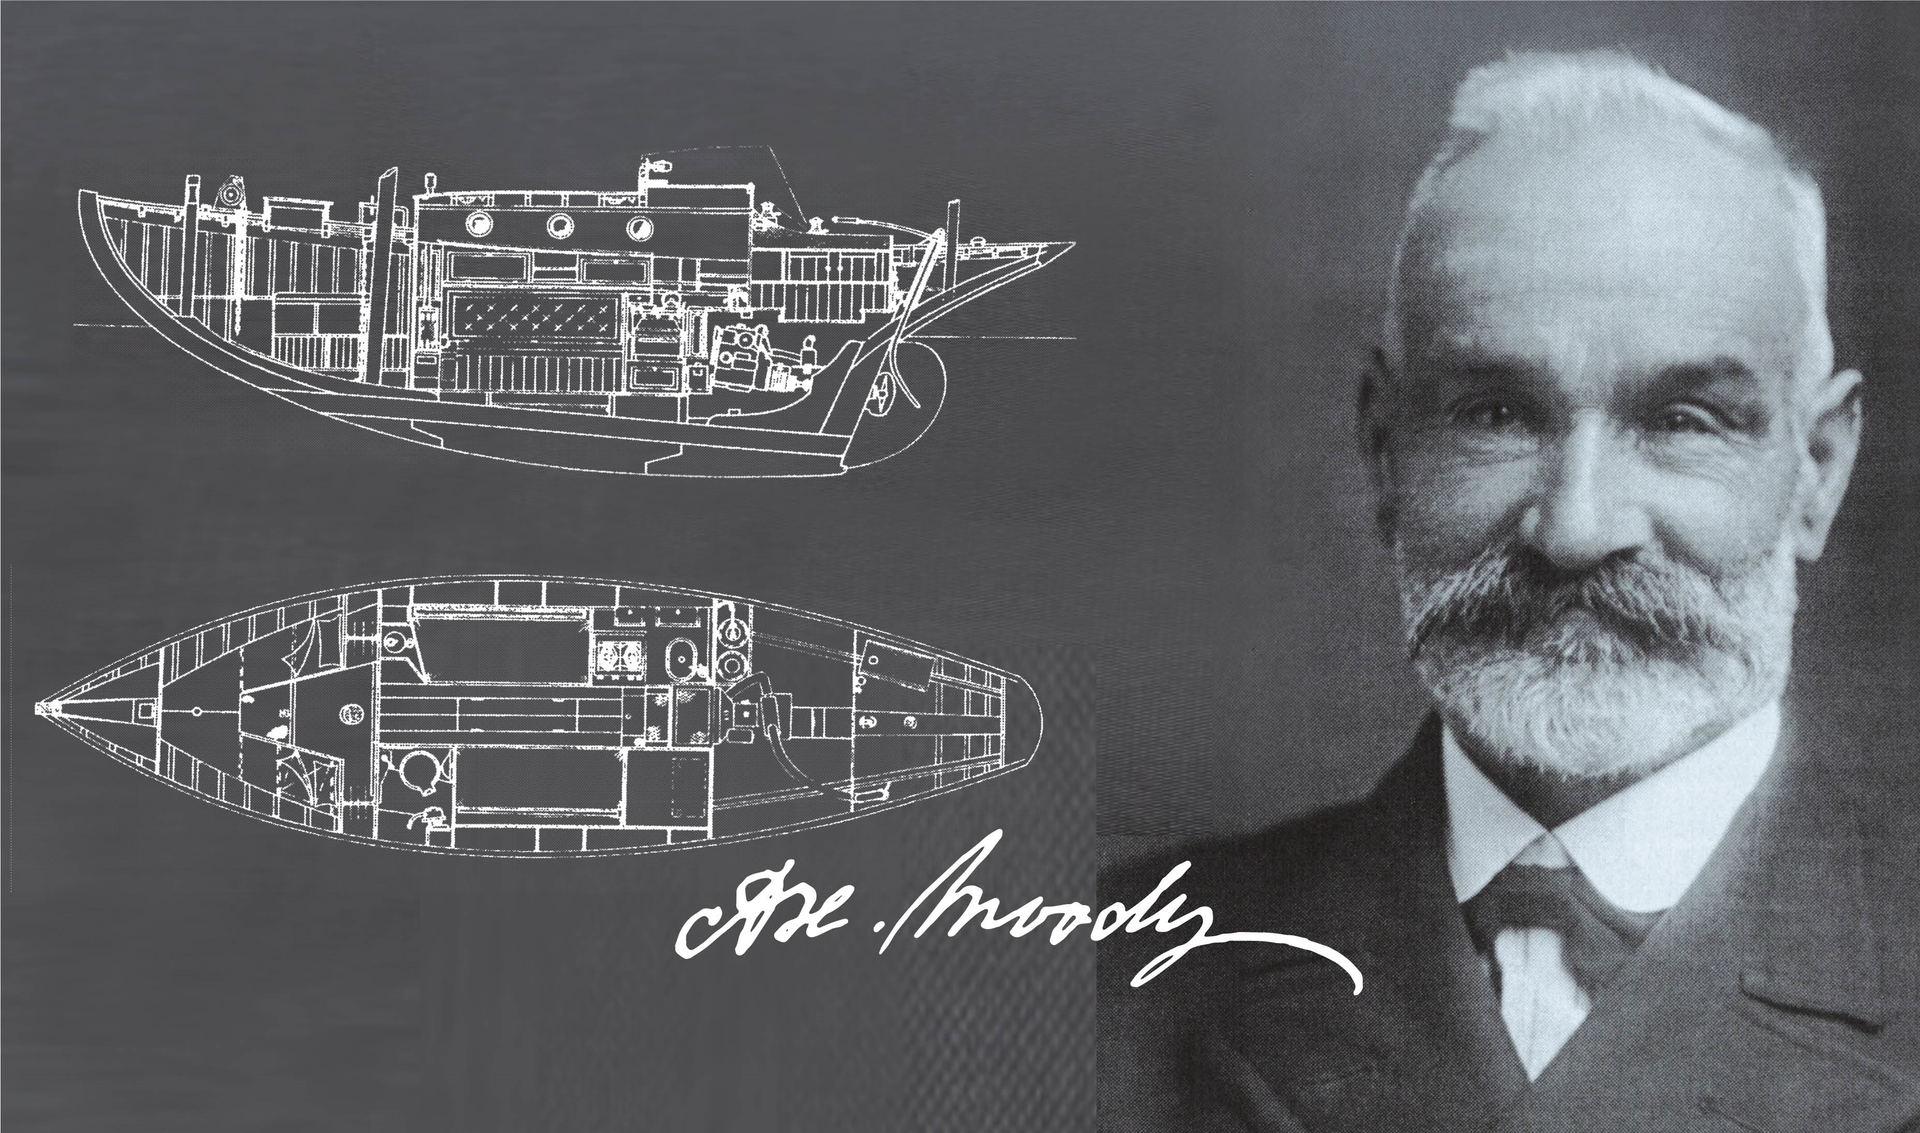 Historia de los veleros Moody, una de las marcas de veleros más antiguas del mundo